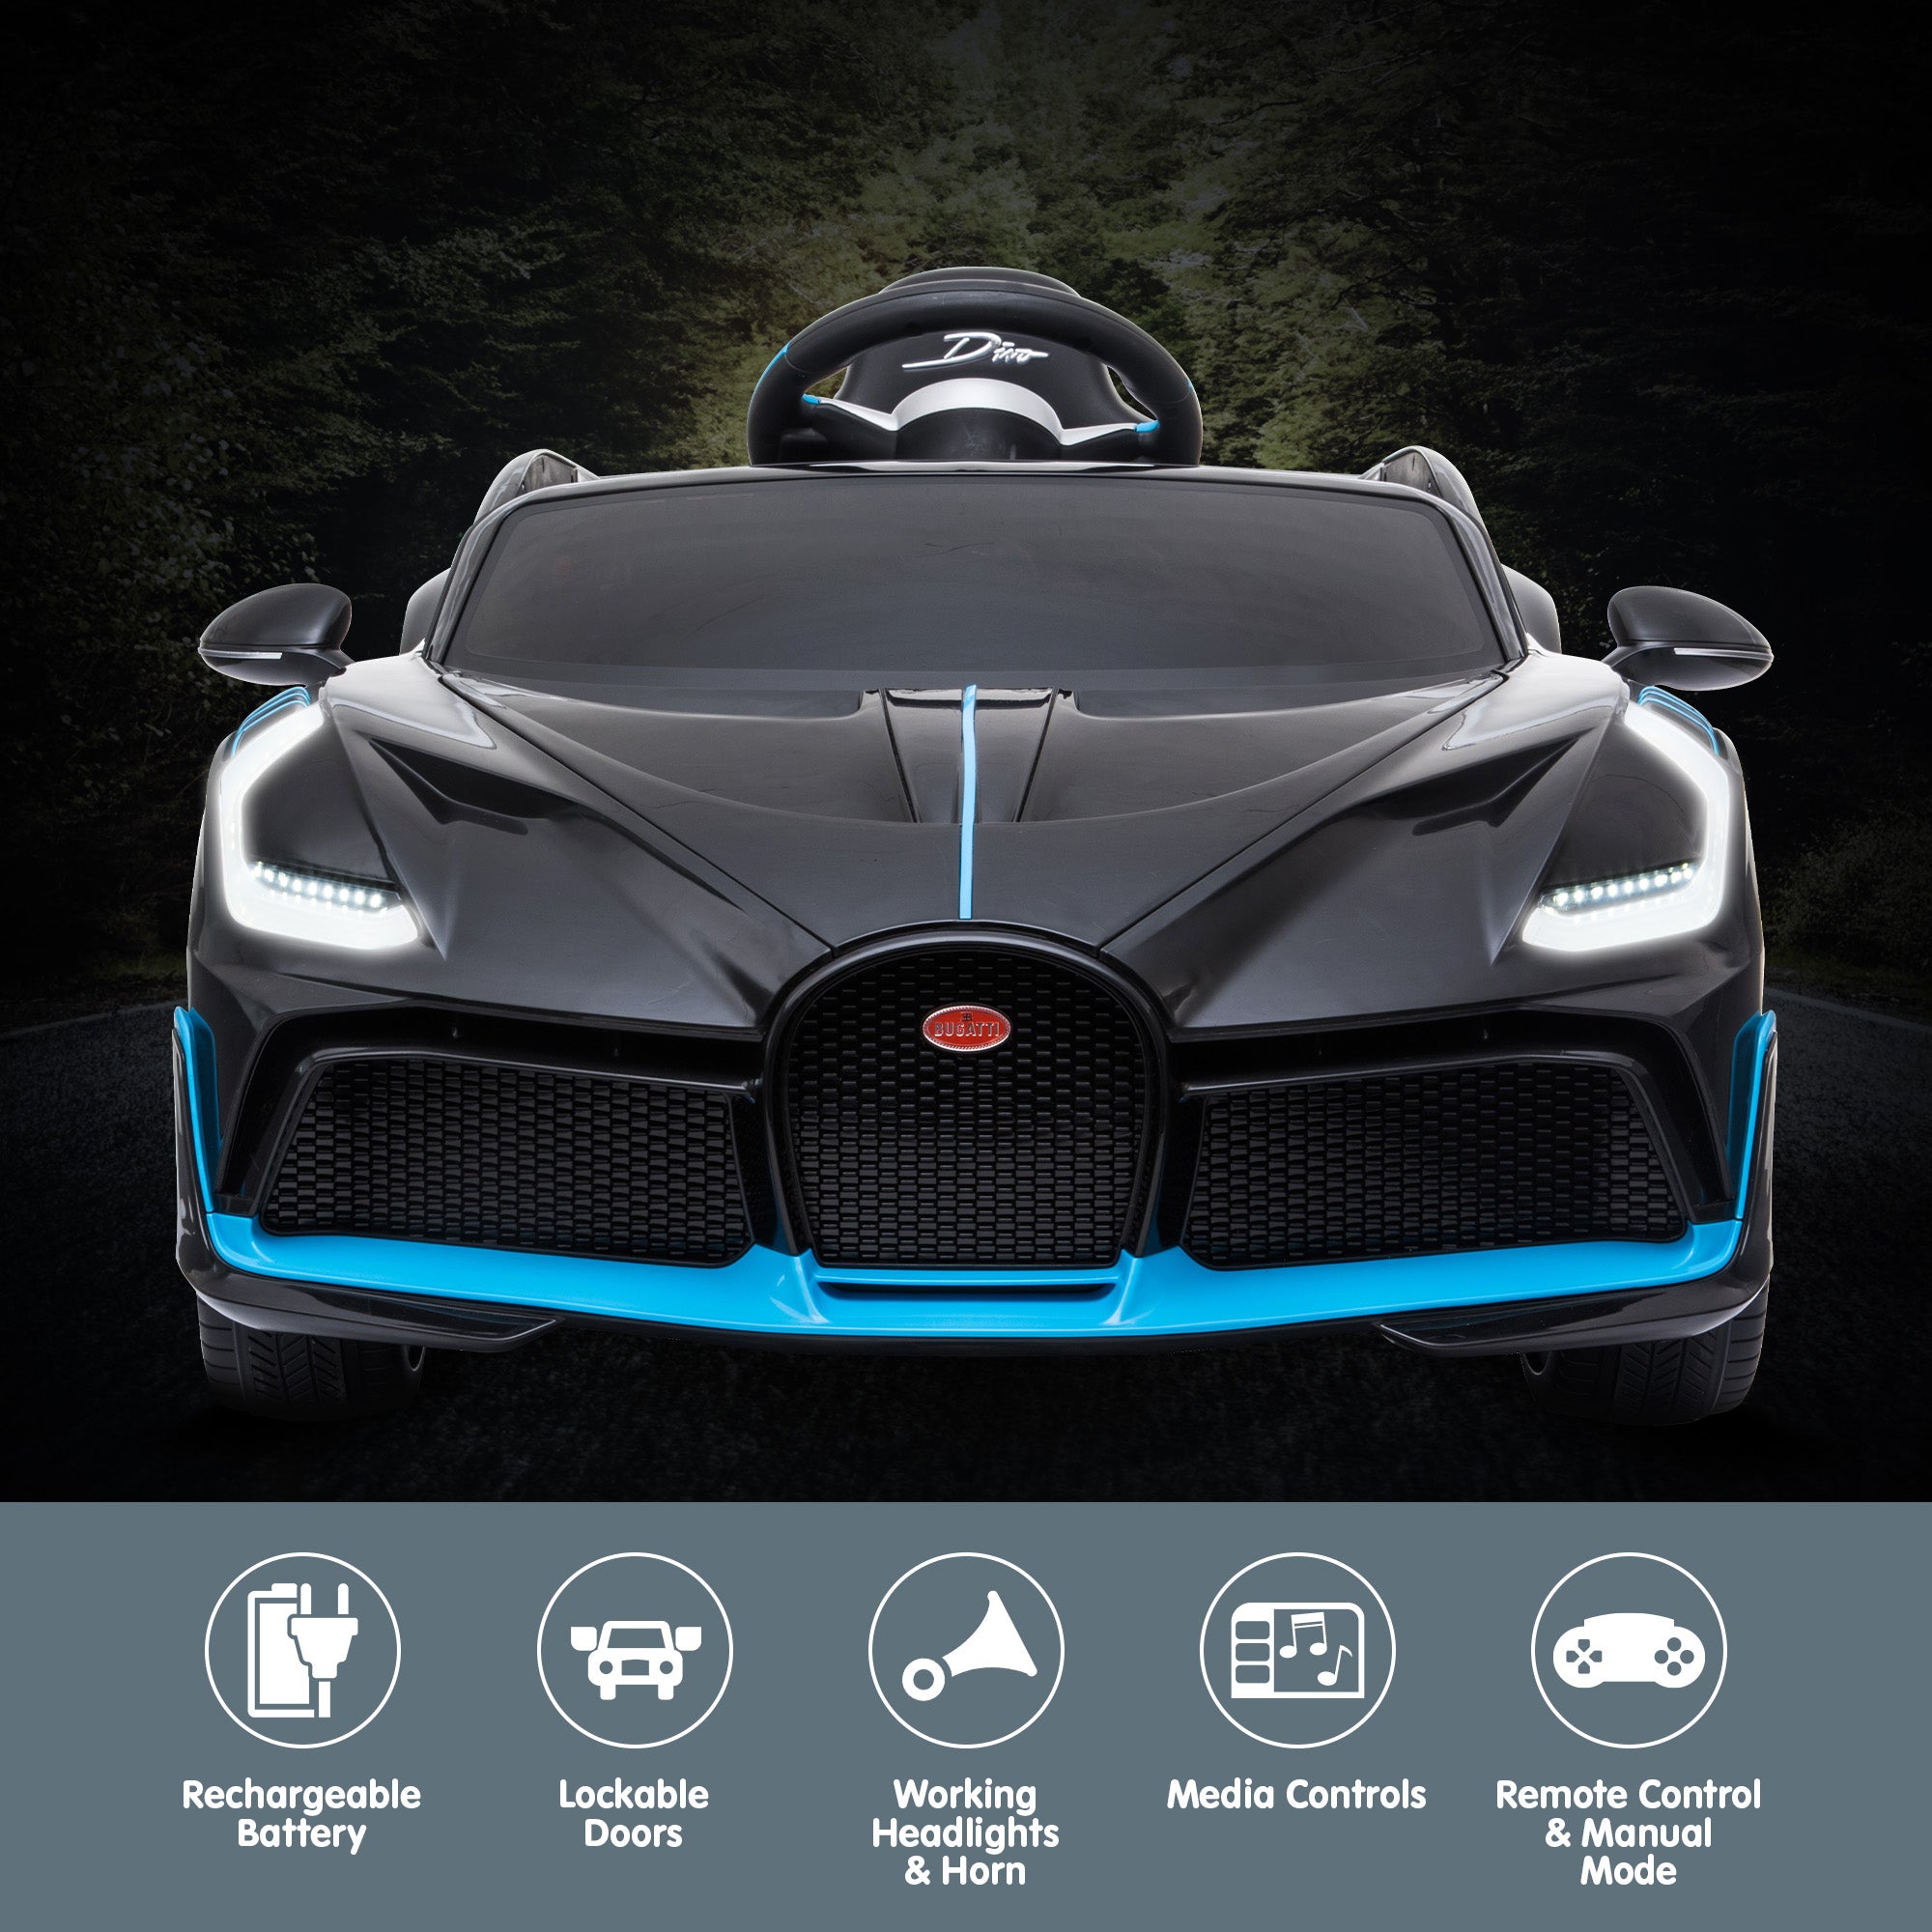 Licensed Bugatti Divo Kids Electric Ride On Car - Black